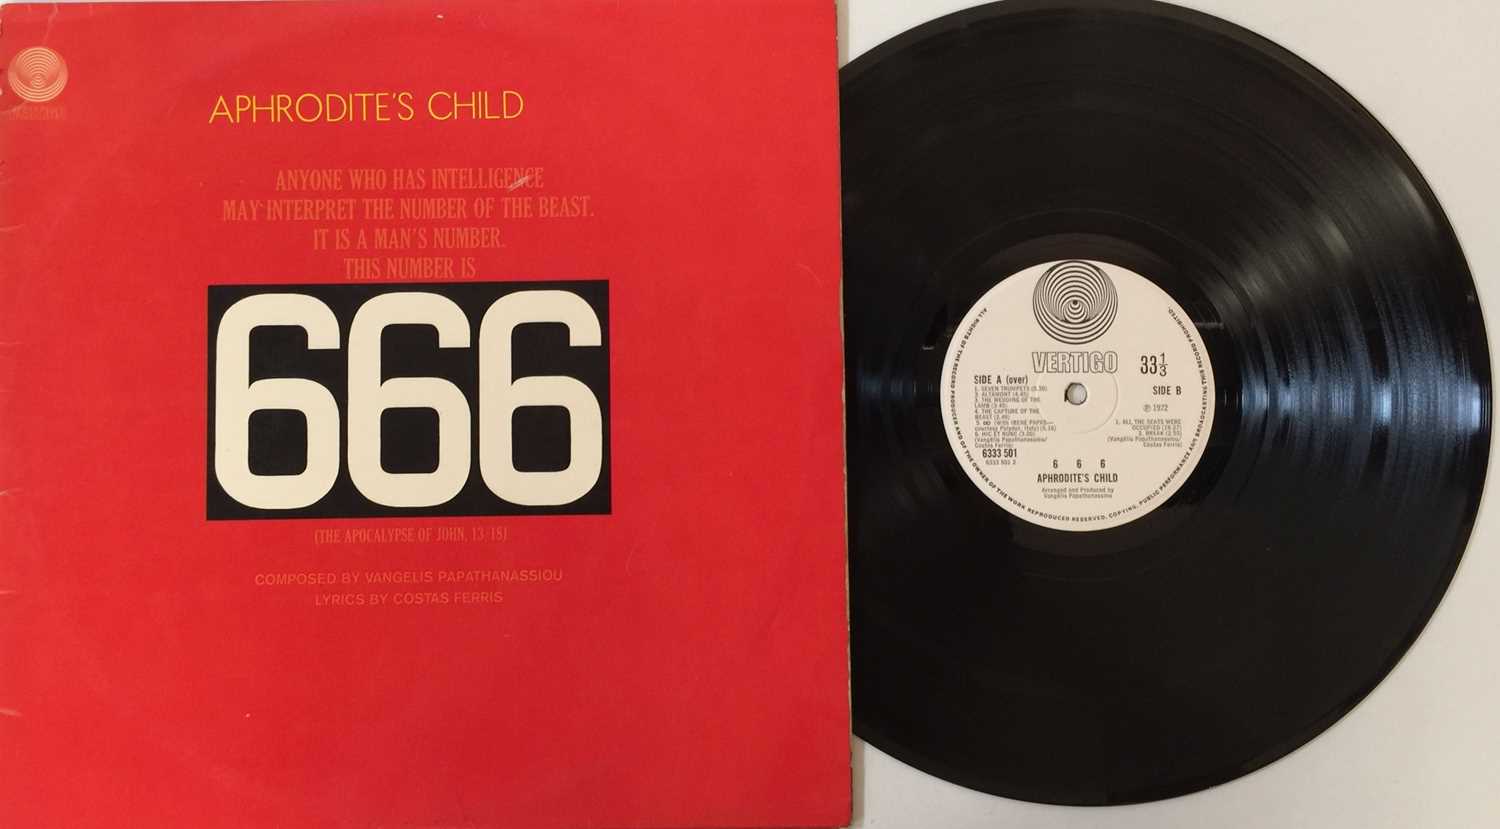 Lot 722 - APHRODITE'S CHILD - 666 LP (ORIGINAL UK